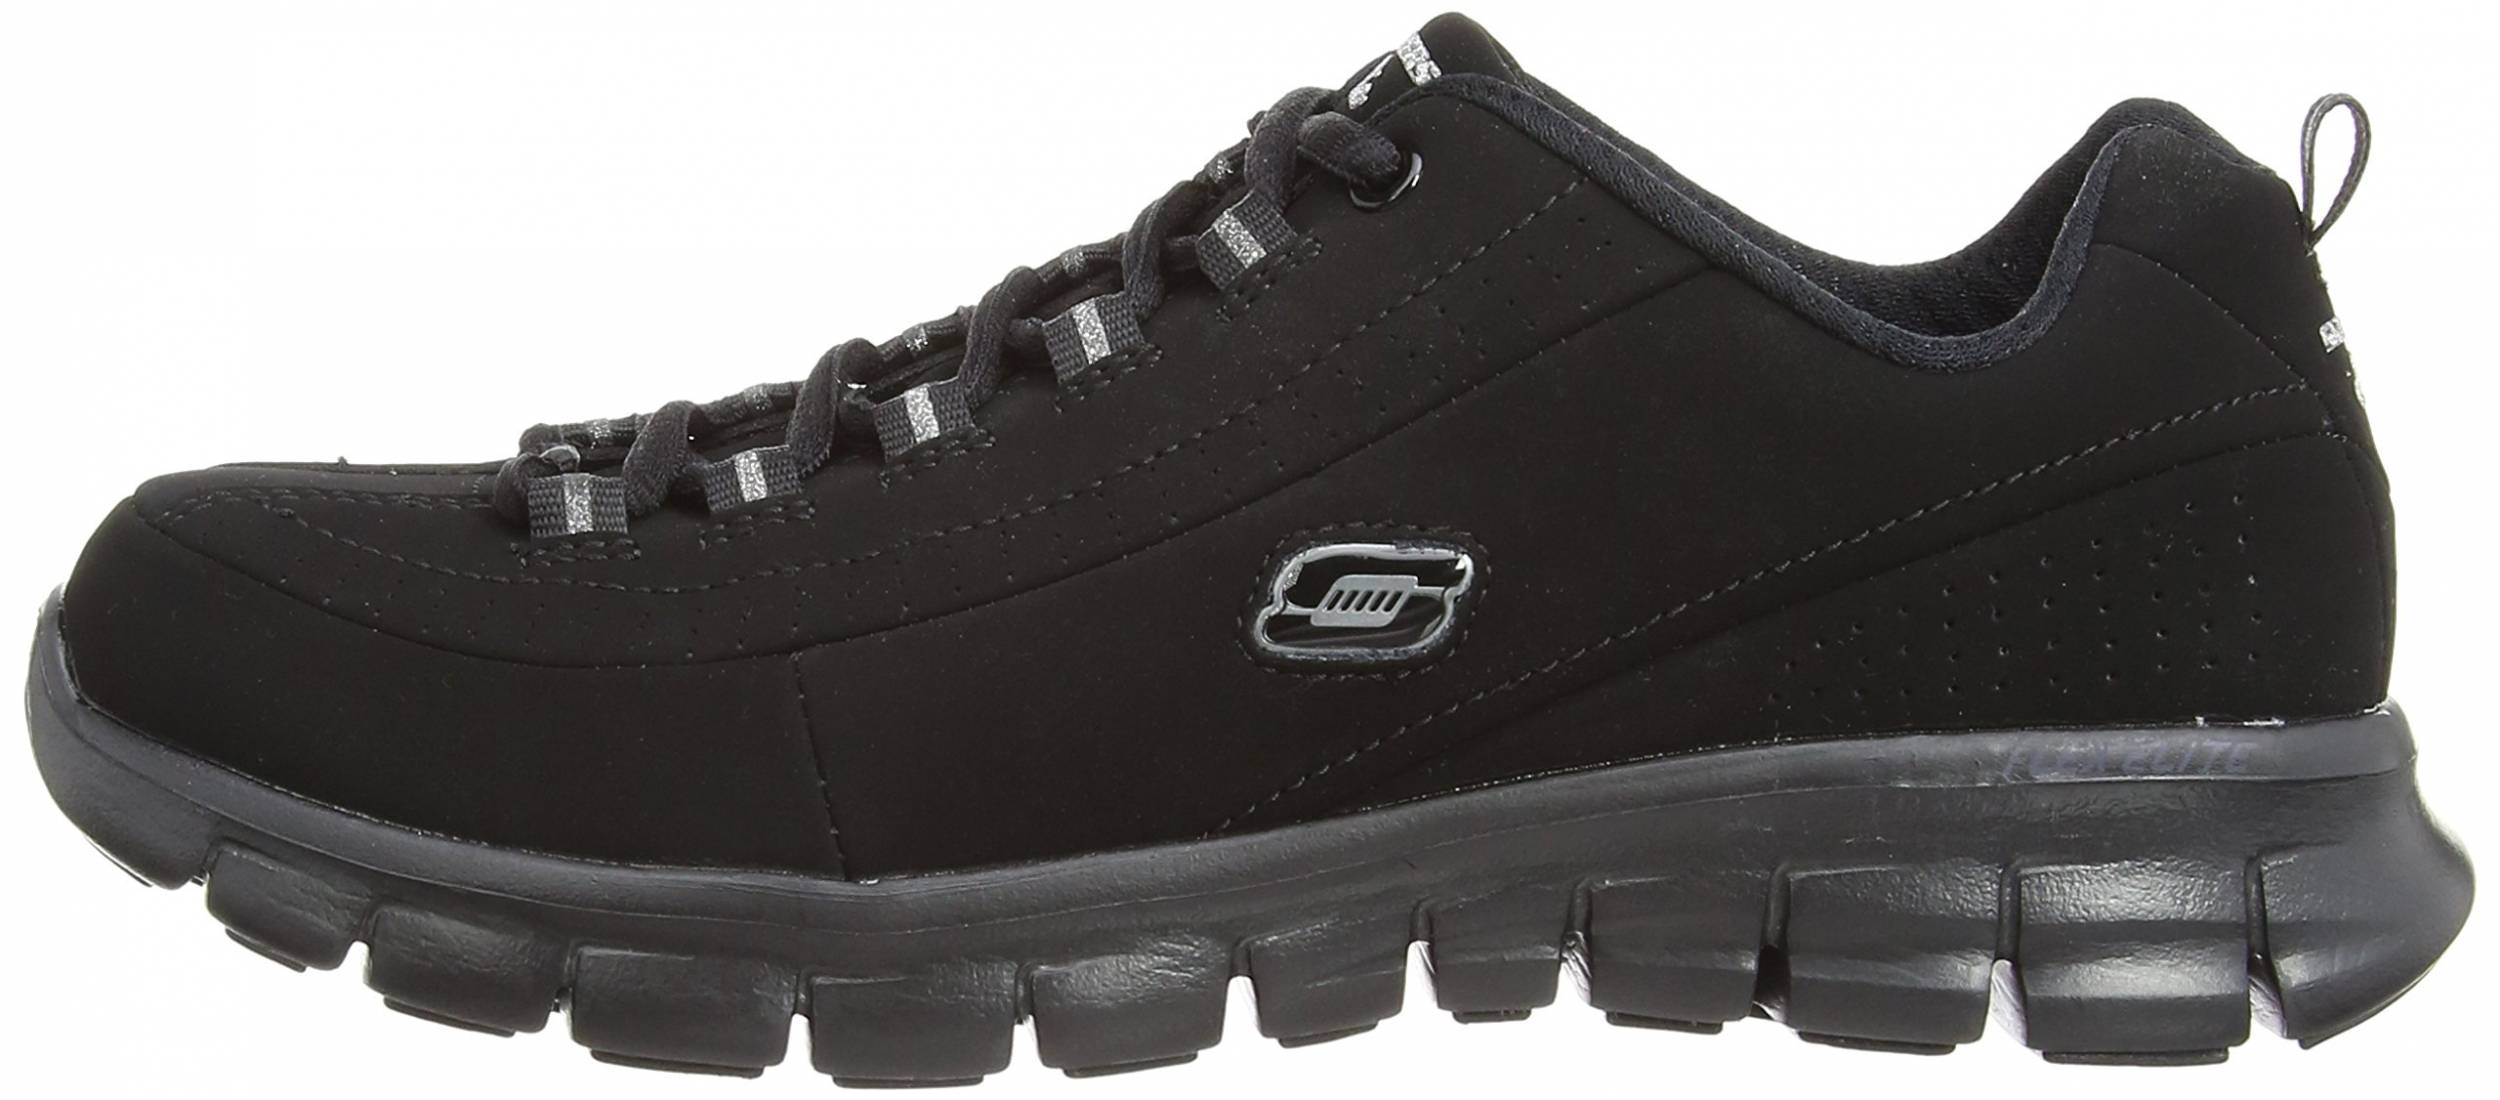 Skechers Synergy sneakers in black 